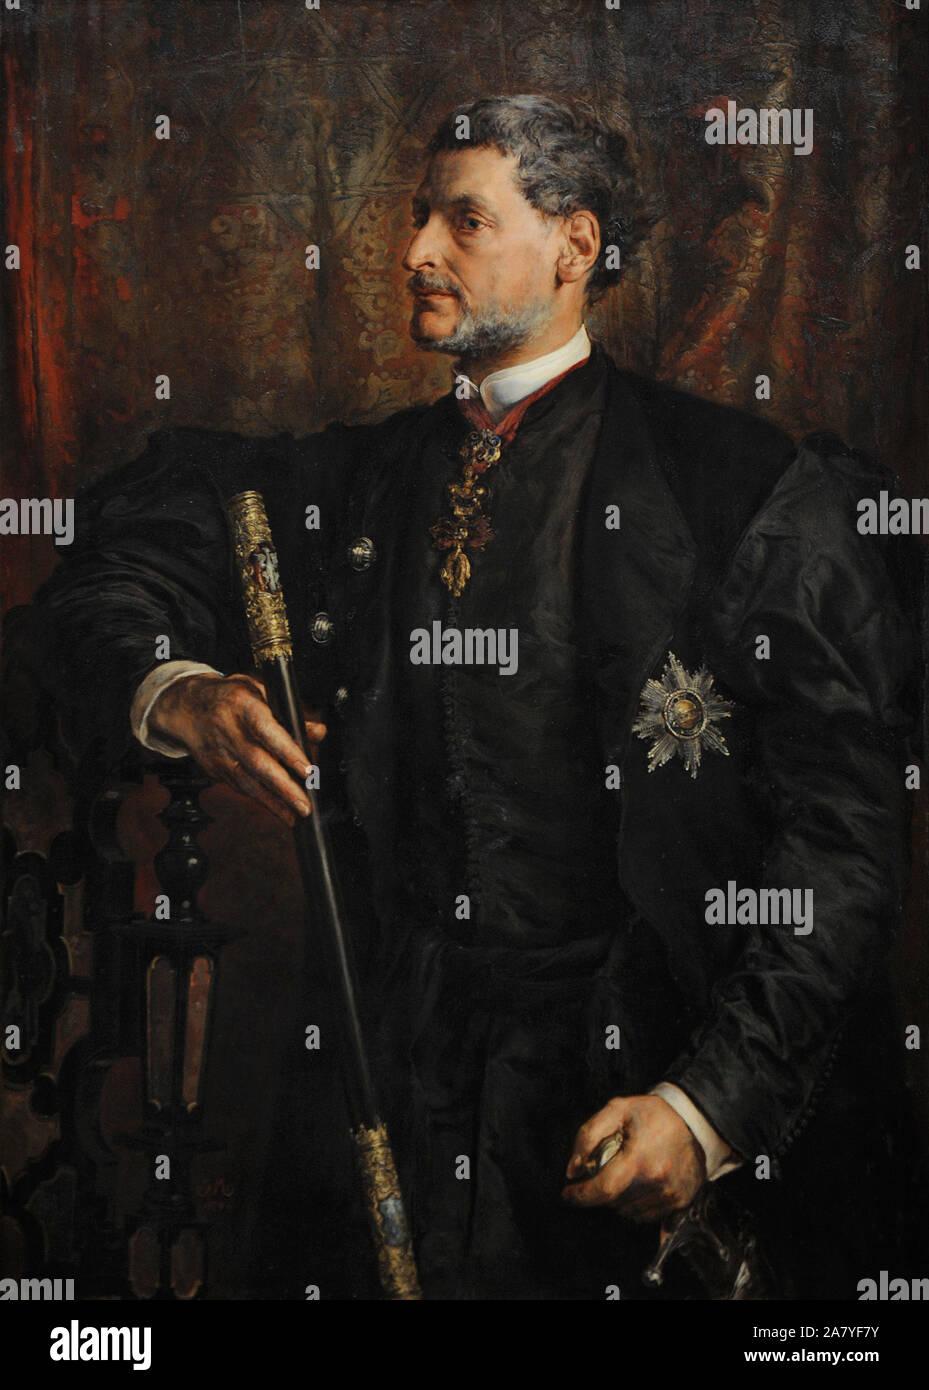 Alfred Potocki (1817-1889). Homme politique polonais. Portrait par Jan Matejko (1838-1893), 1879. Galerie d'Art Polonais du xixe siècle (Musée Sukiennice). Musée National de Cracovie. La Pologne. Banque D'Images